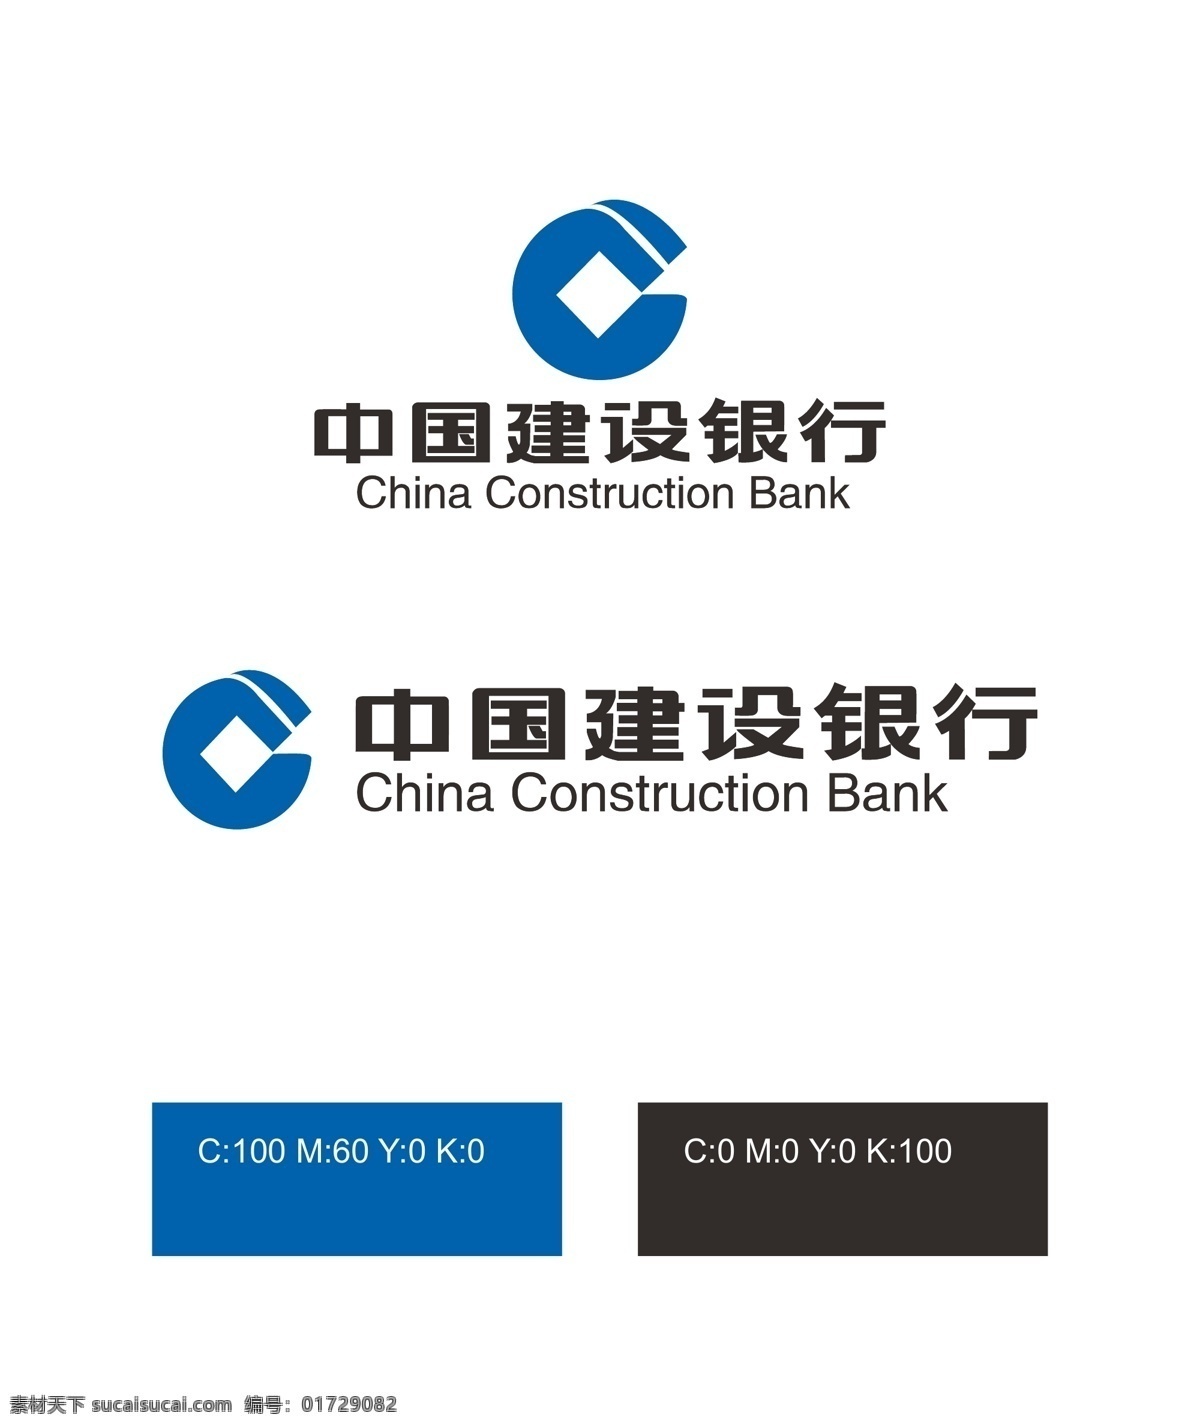 中国建设银行 logo 建设银行 金融logo 金融 矢量logo 企业logo 银行 银行logo logo设计